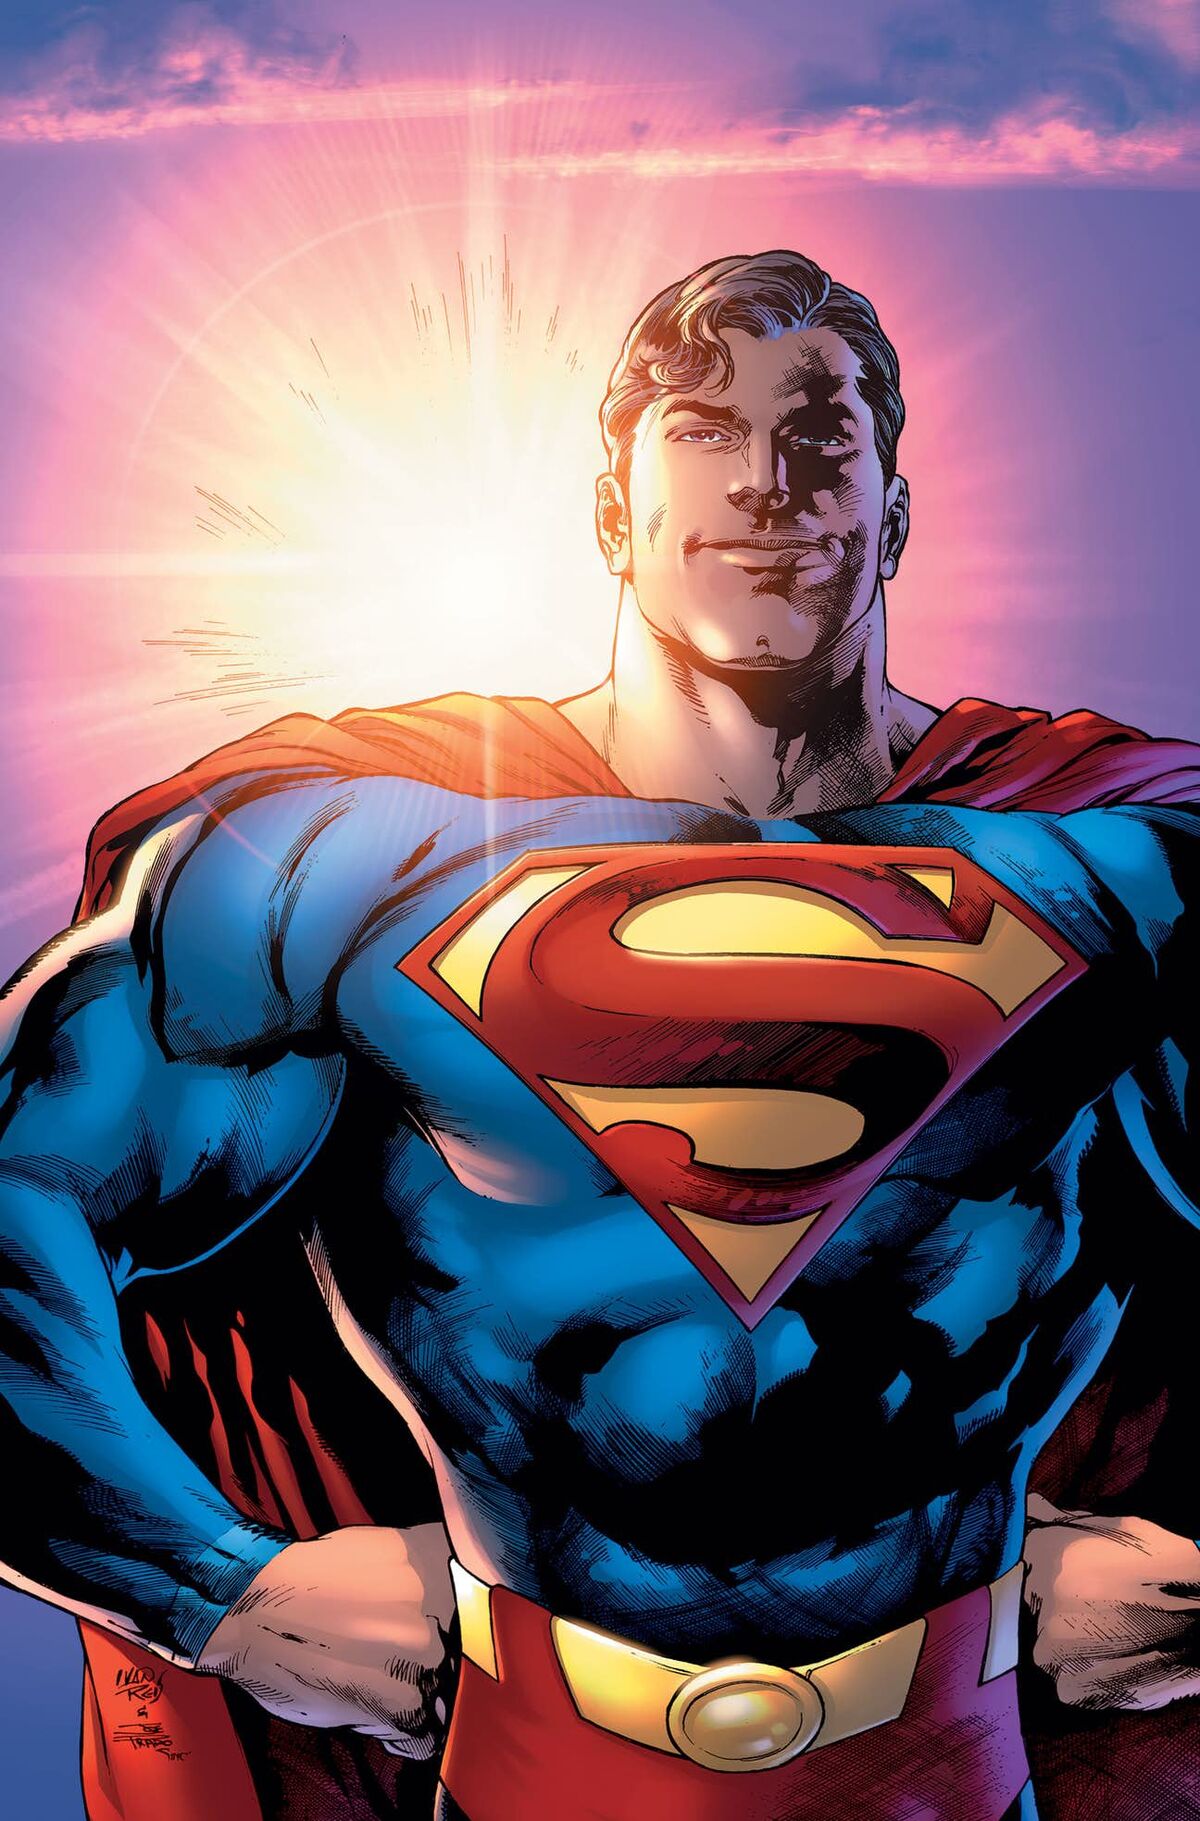 All-Star Superman - Wikipedia